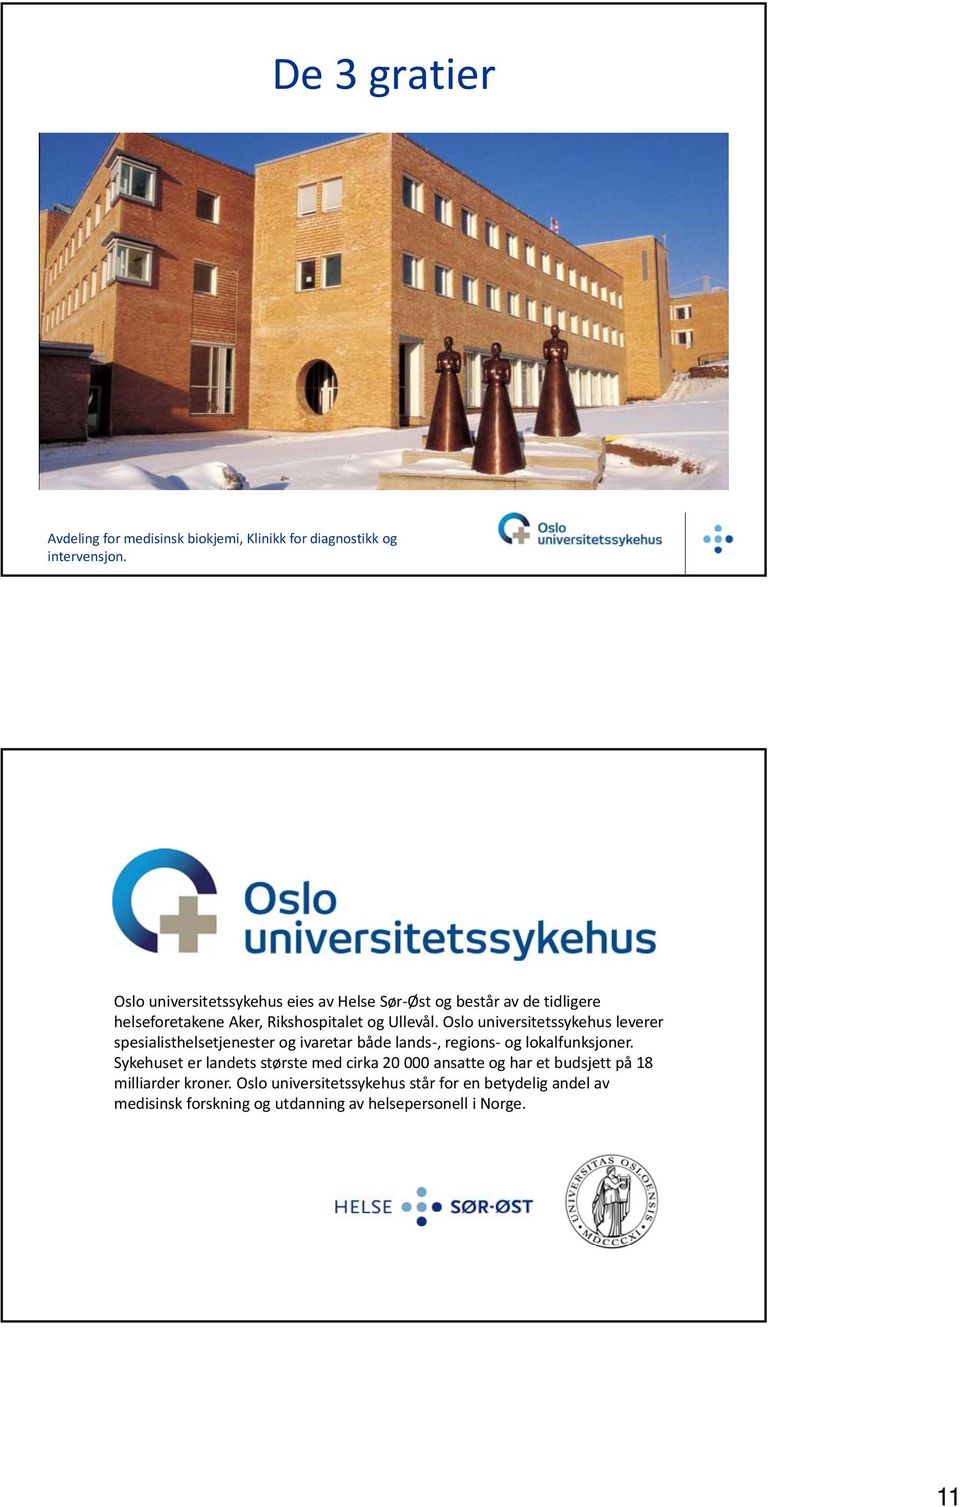 Oslo universitetssykehus leverer spesialisthelsetjenester og ivaretar både lands, regions og lokalfunksjoner.